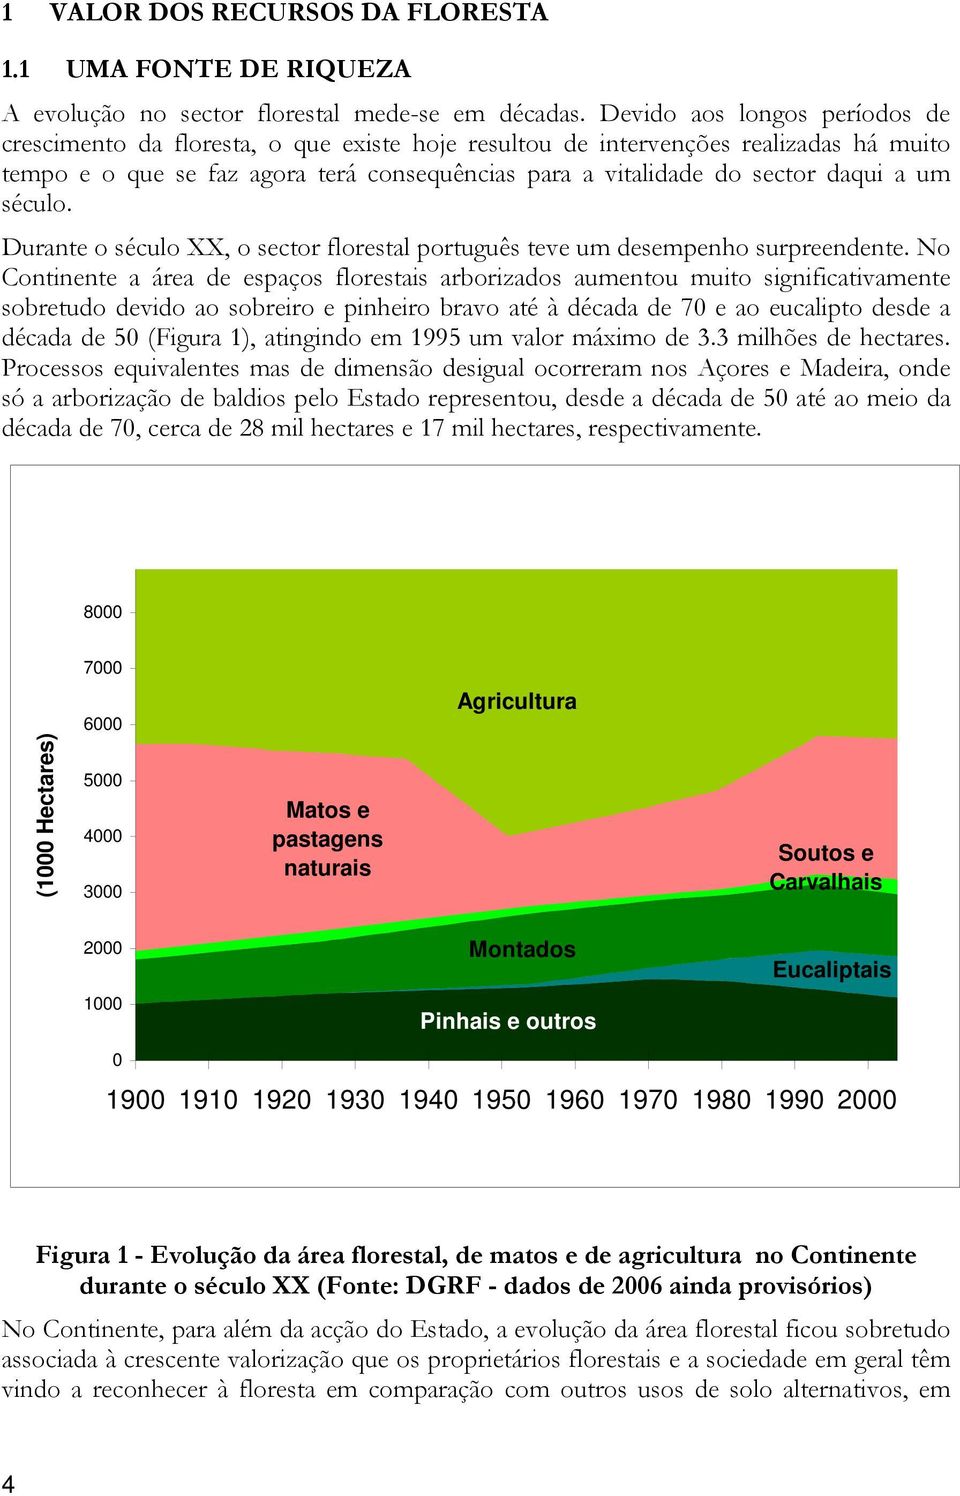 um século. Durante o século XX, o sector florestal português teve um desempenho surpreendente.